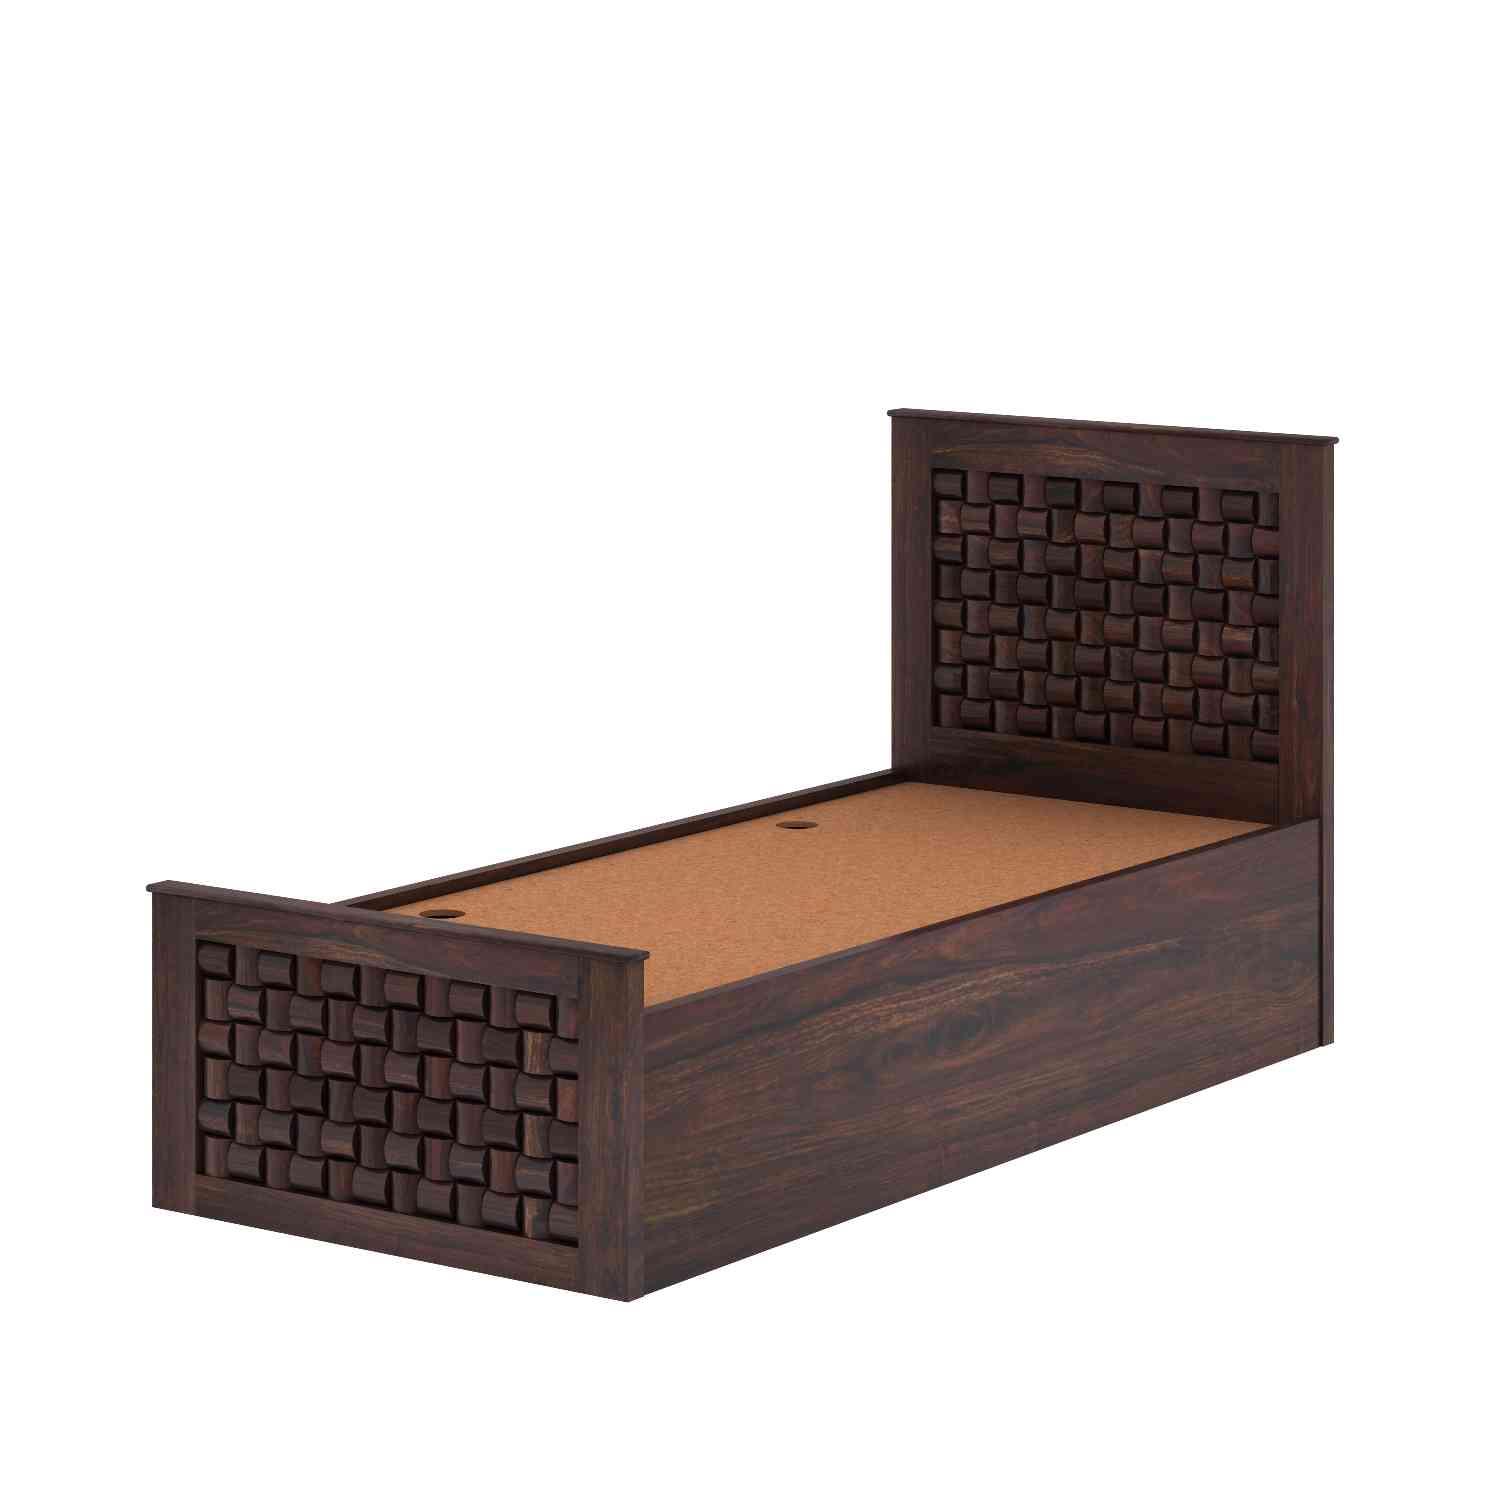 Olivia Solid Sheesham Wood Single Bed With Box Storage (Walnut Finish)